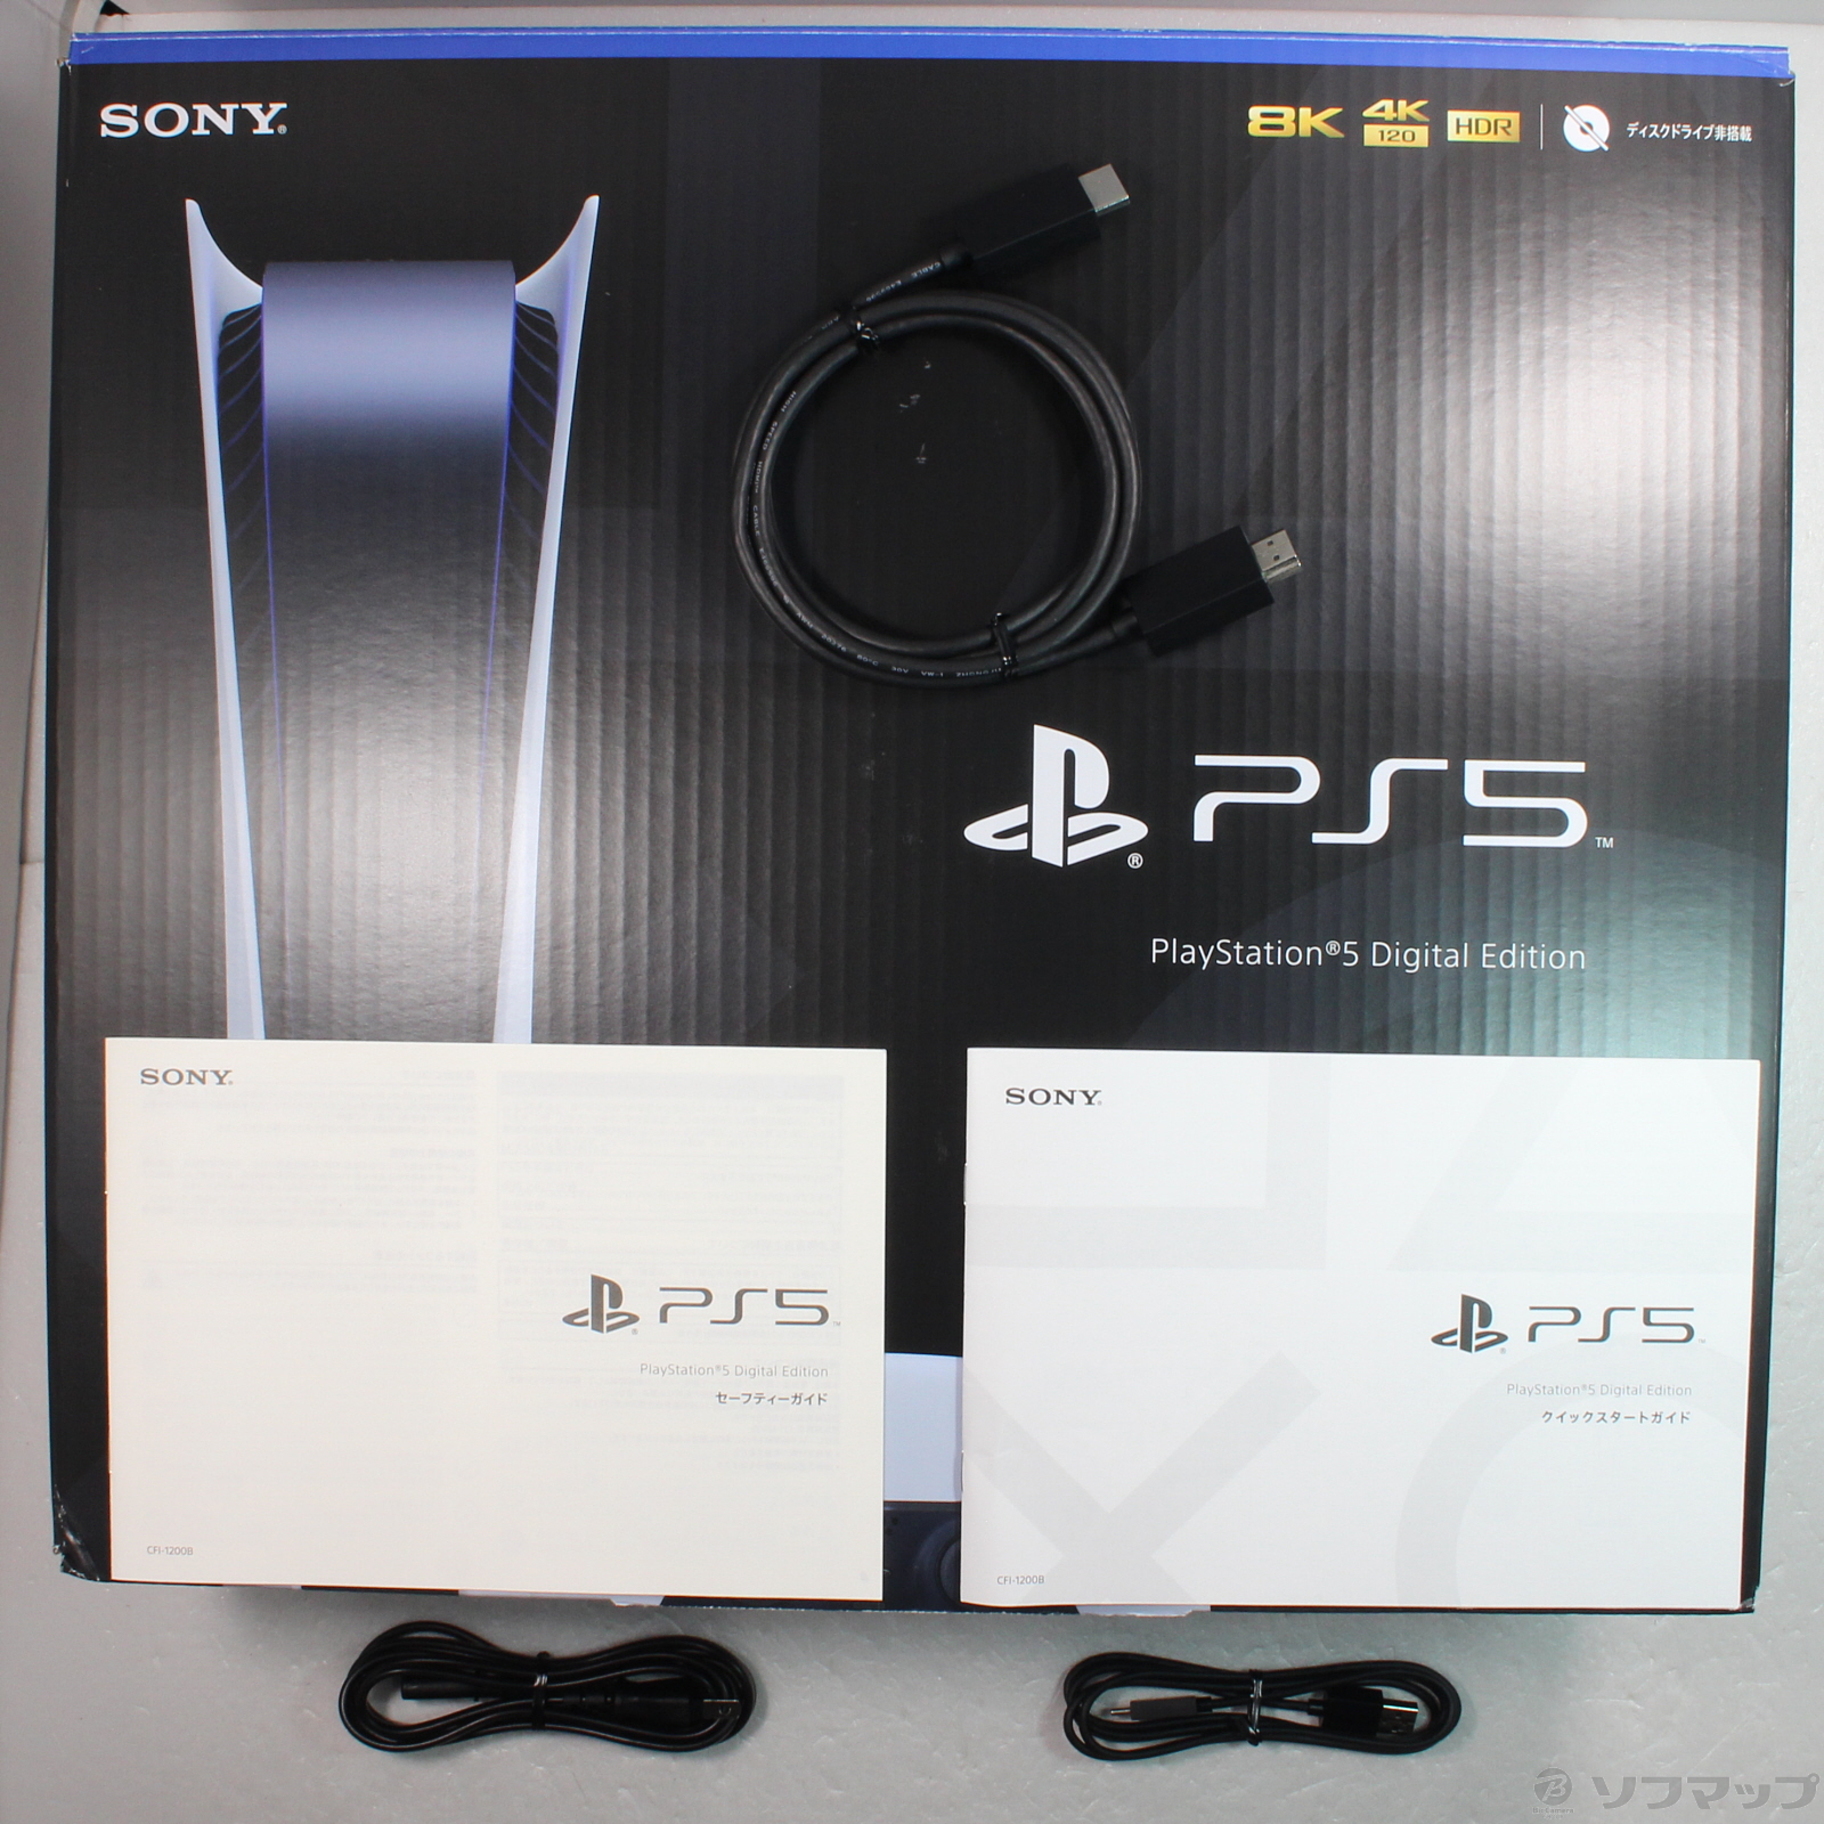 PlayStation 5 digital edition CFI-1200B - www.bleachcolorgrading.com